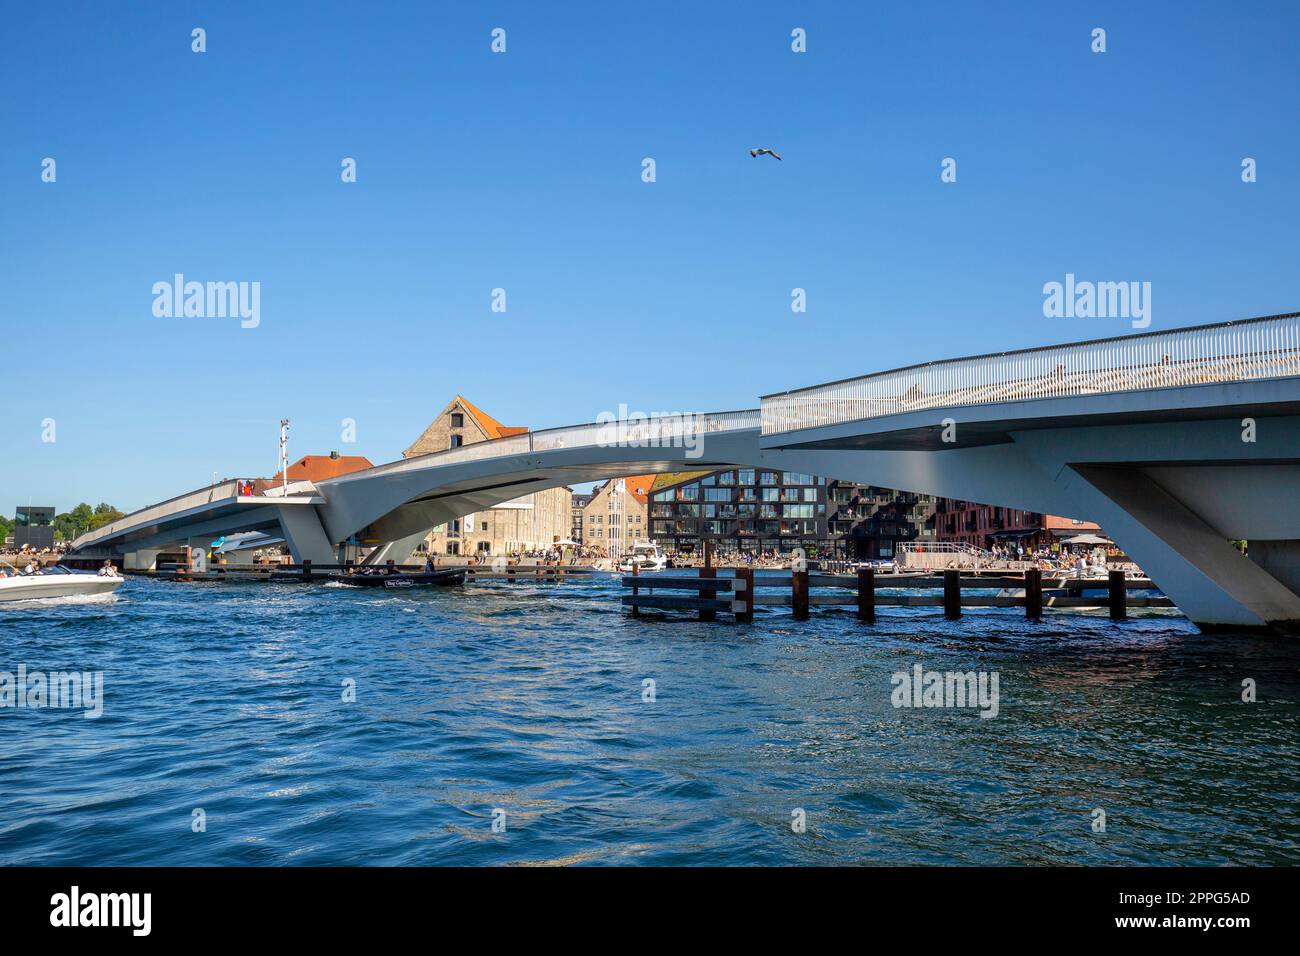 Inderhavnsbroen (Inner Harbour Bridge), pedestrian and bicyclist bridge, Copenhagen, Denmark Stock Photo